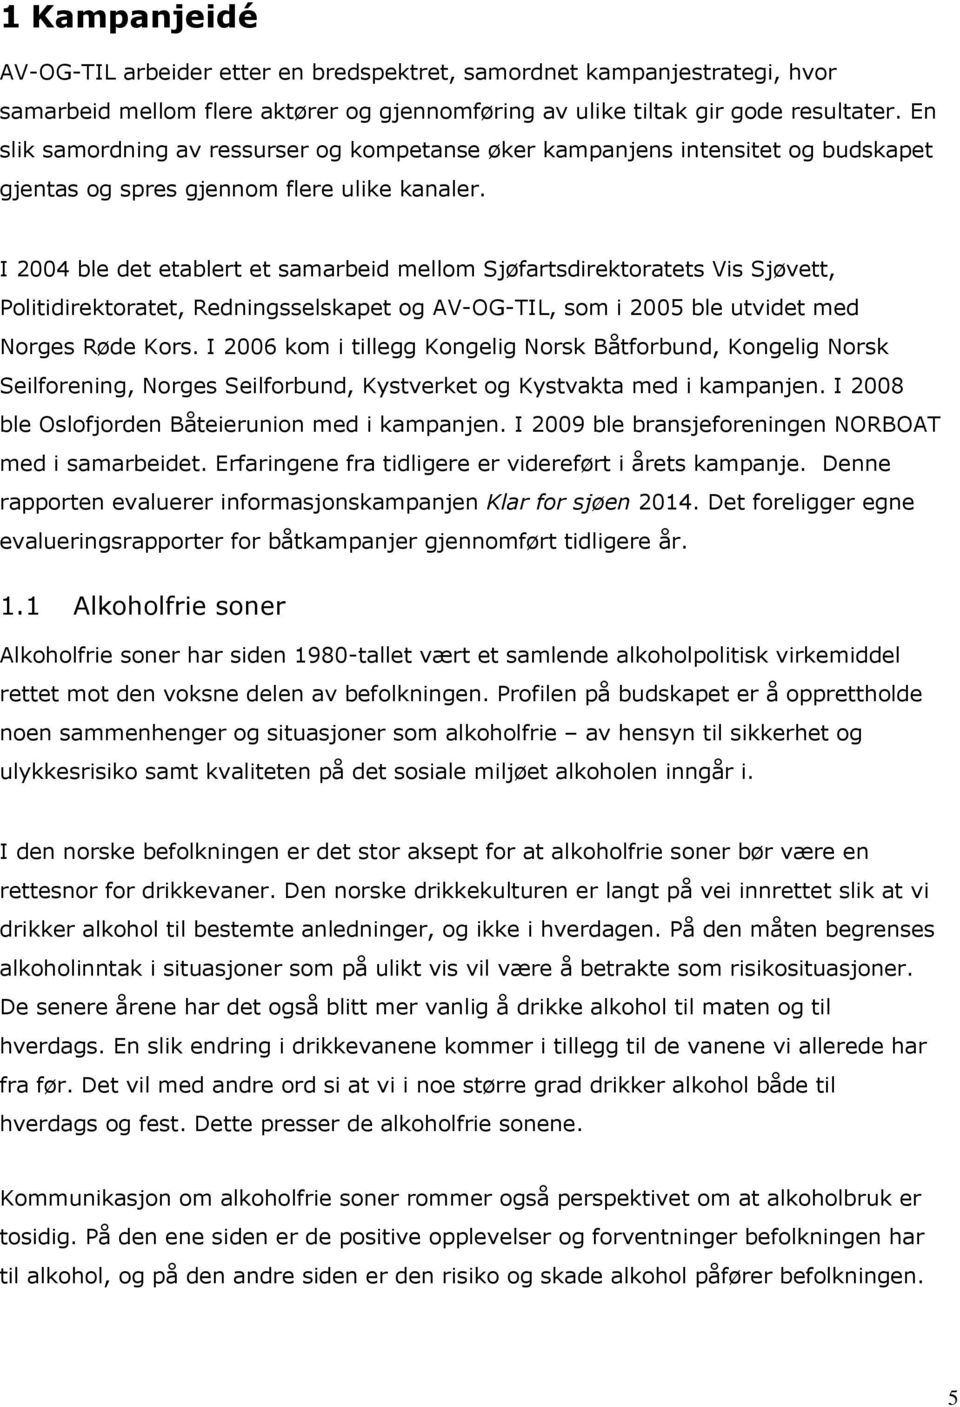 I 2004 ble det etablert et samarbeid mellom Sjøfartsdirektoratets Vis Sjøvett, Politidirektoratet, Redningsselskapet og AV-OG-TIL, som i 2005 ble utvidet med Norges Røde Kors.